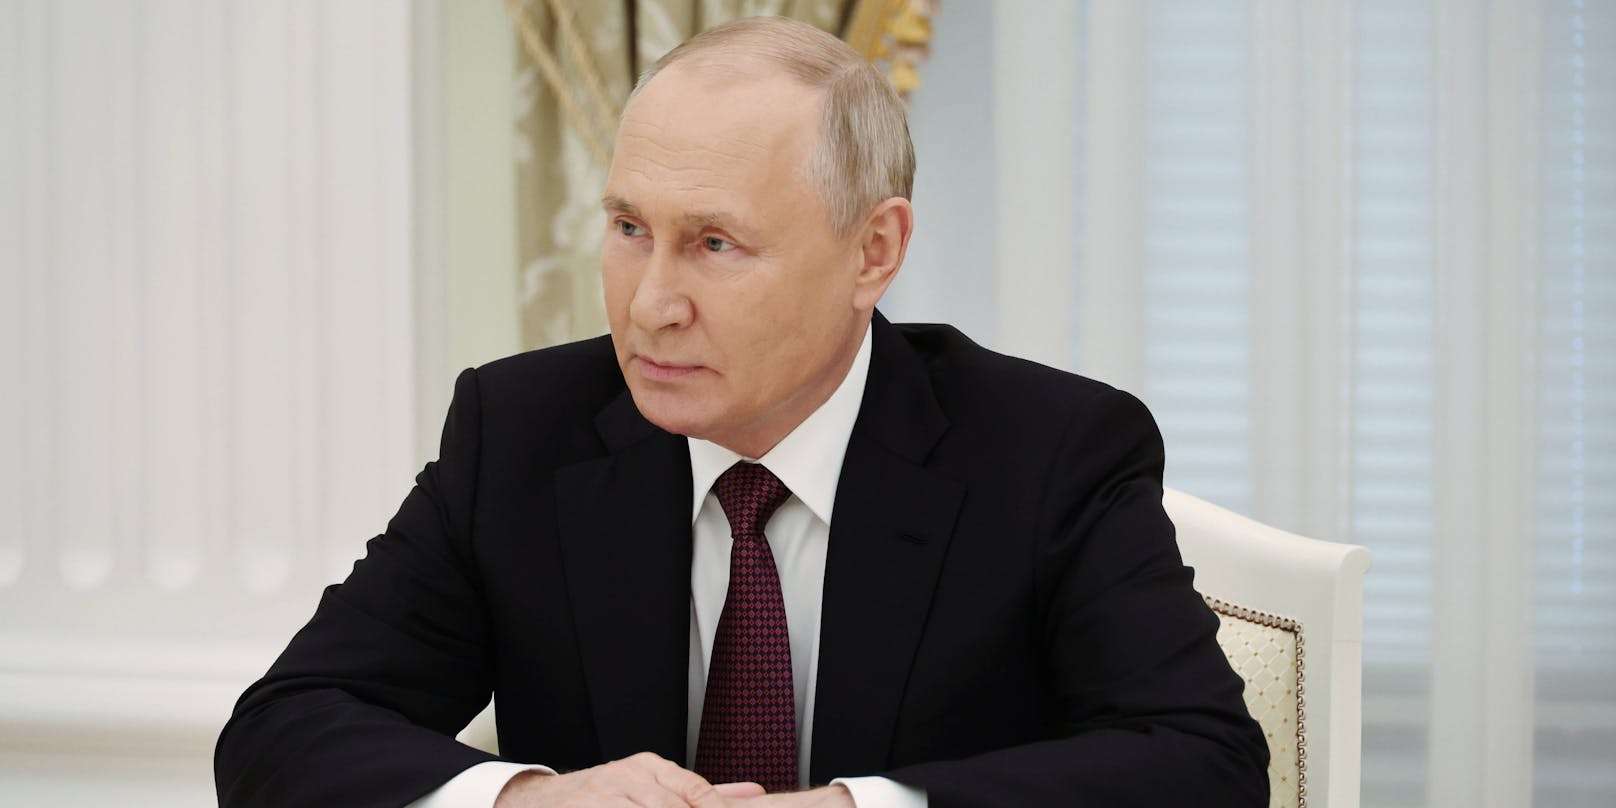 Der russische Präsident Wladimir Putin äußert erstmals zum Flugzeugabsturz, bei dem Wagner-Chef Prigoschin getötet wurde.